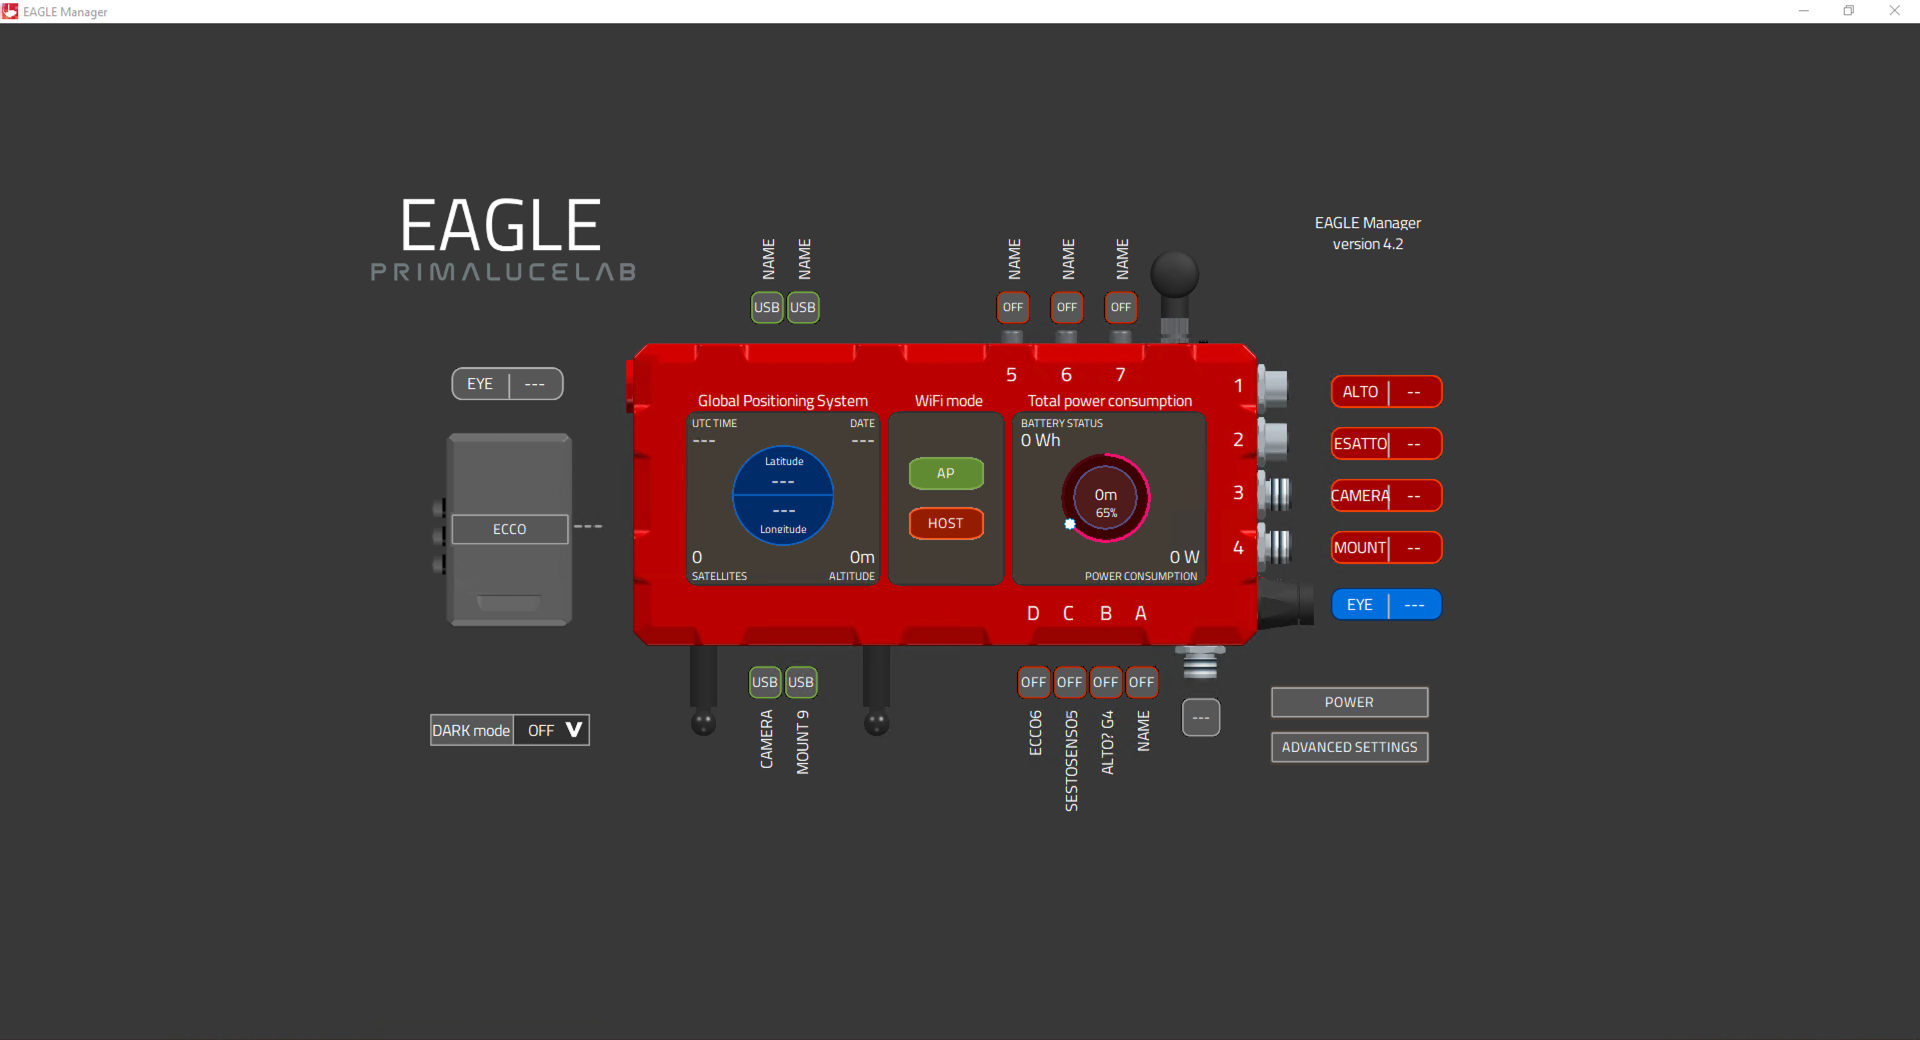 Risoluzione dei problemi: EAGLE Manager non riesce a controllare le porte USB e di alimentazione di EAGLE